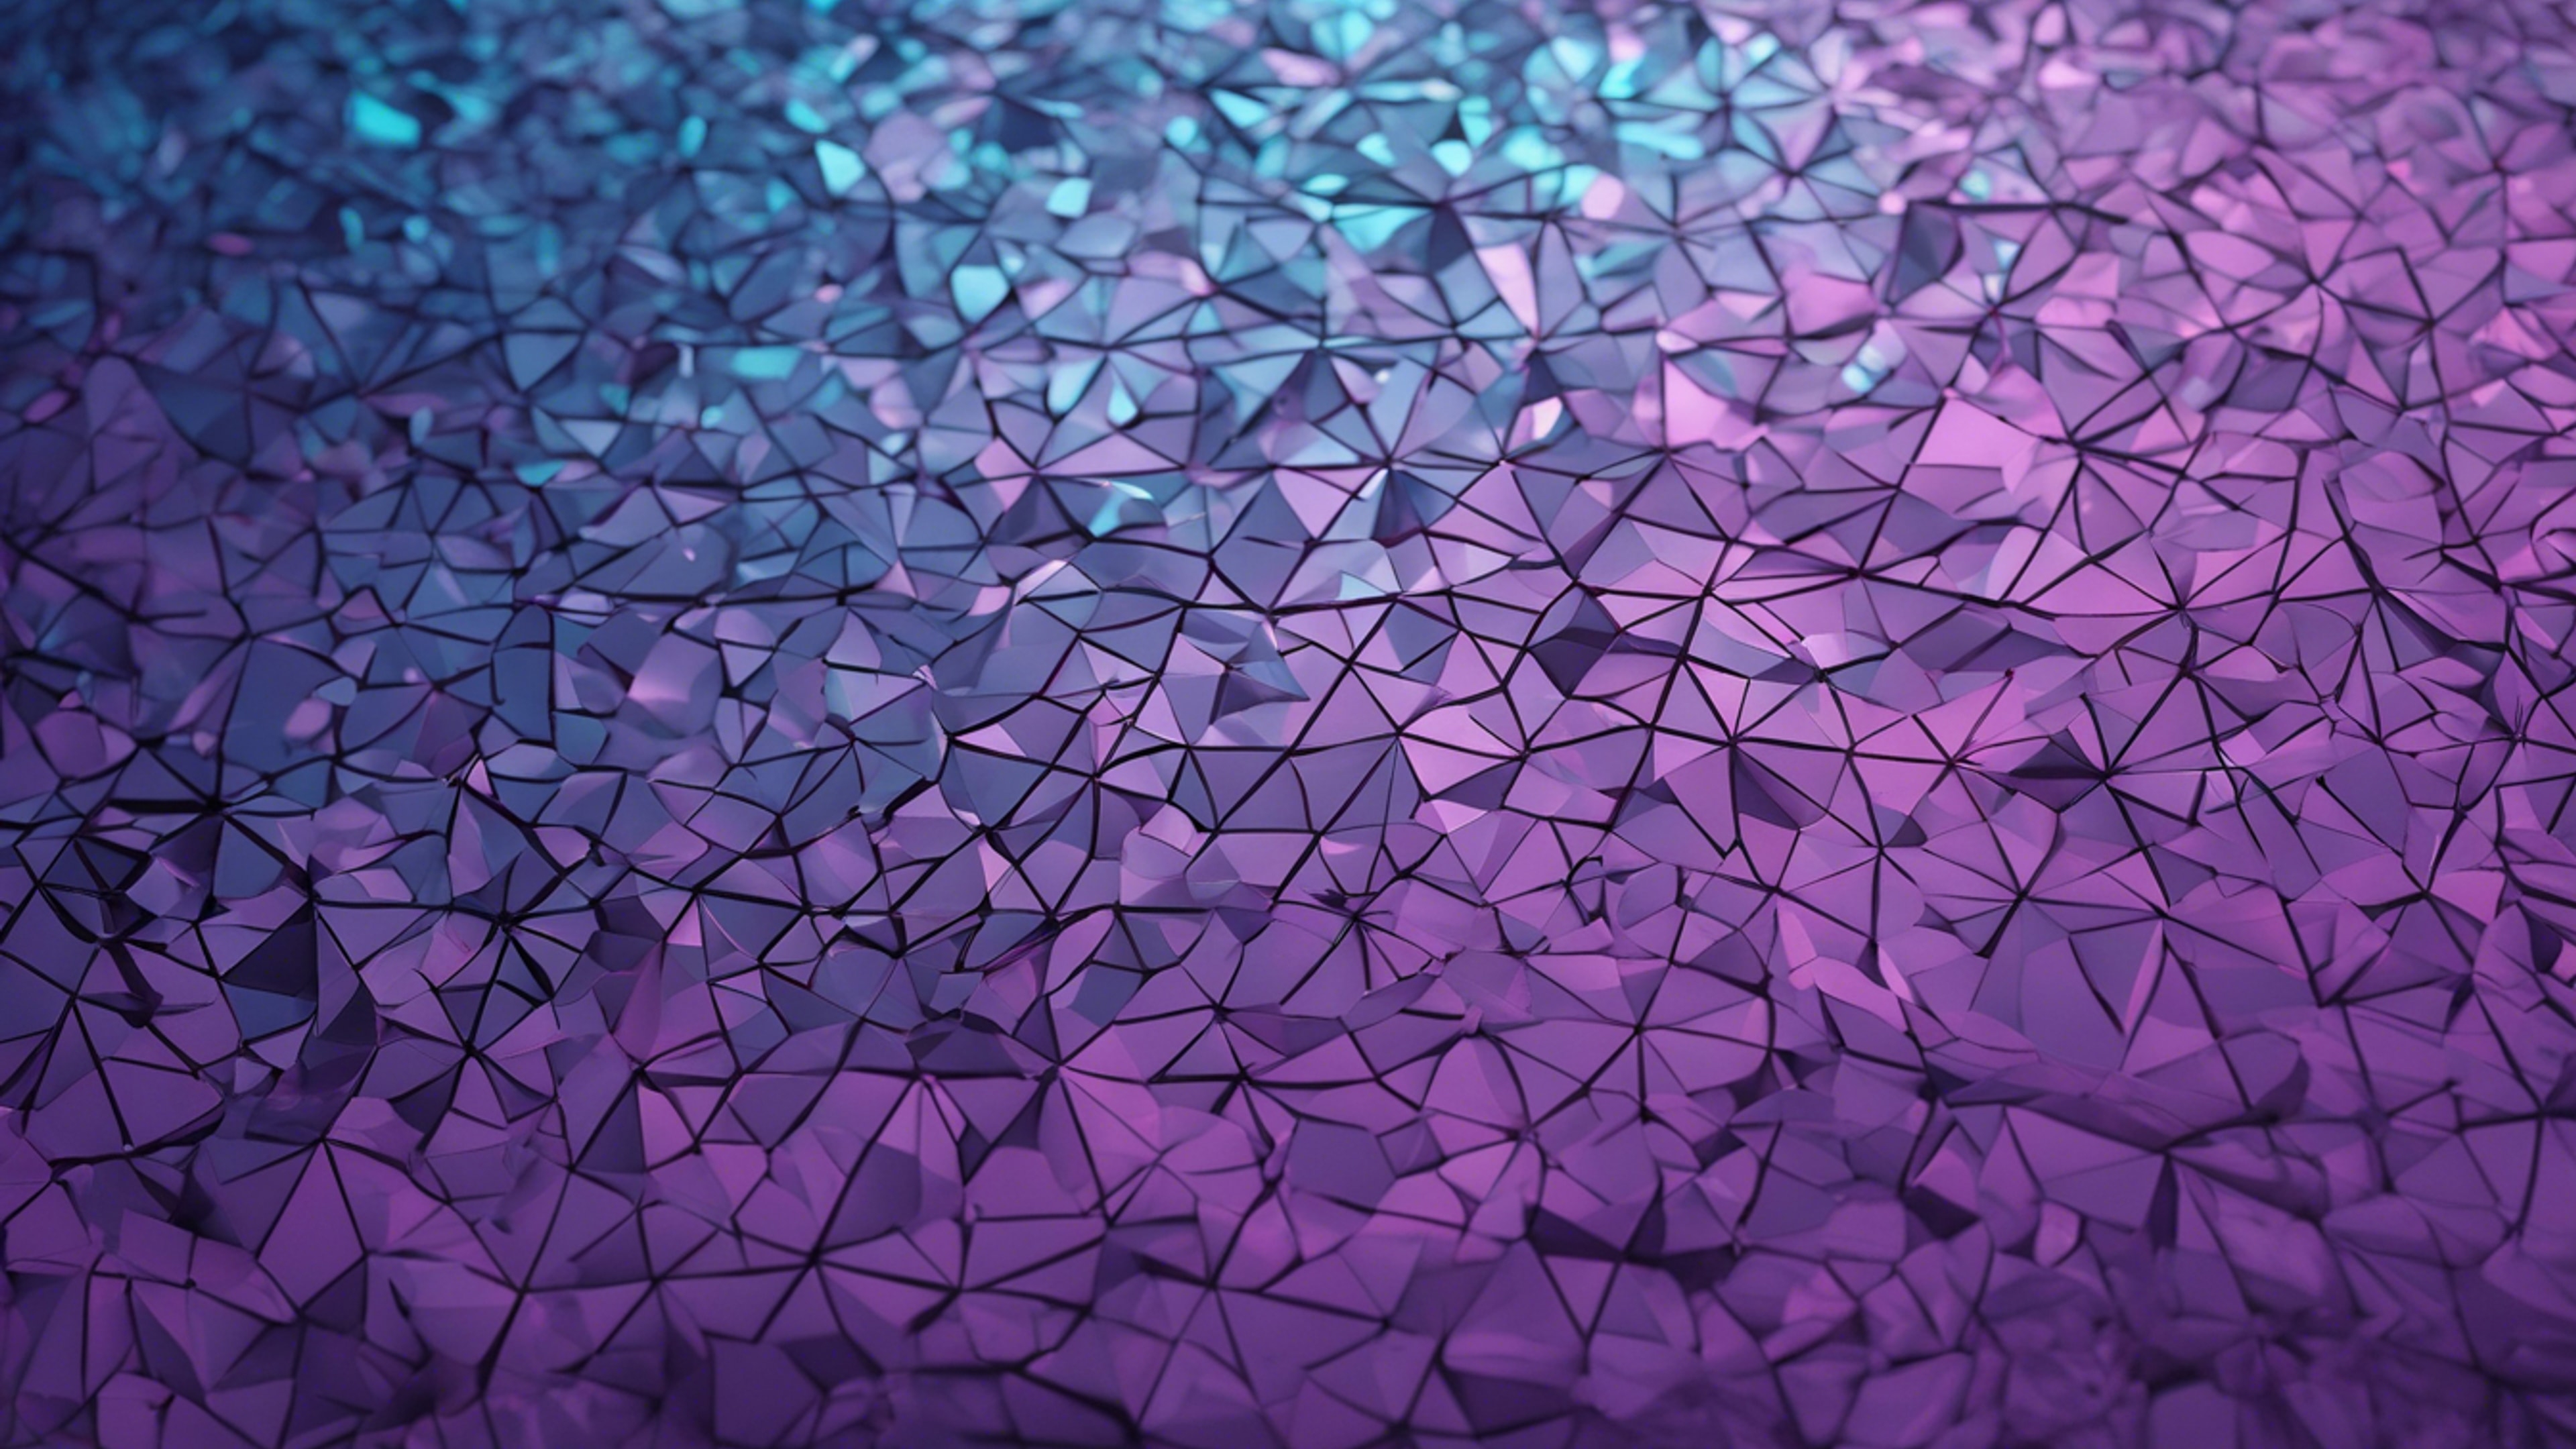 A minimalistic geometric pattern with gradients of cool blues and rich purples. Divar kağızı[0965c8f37dc94faa9227]